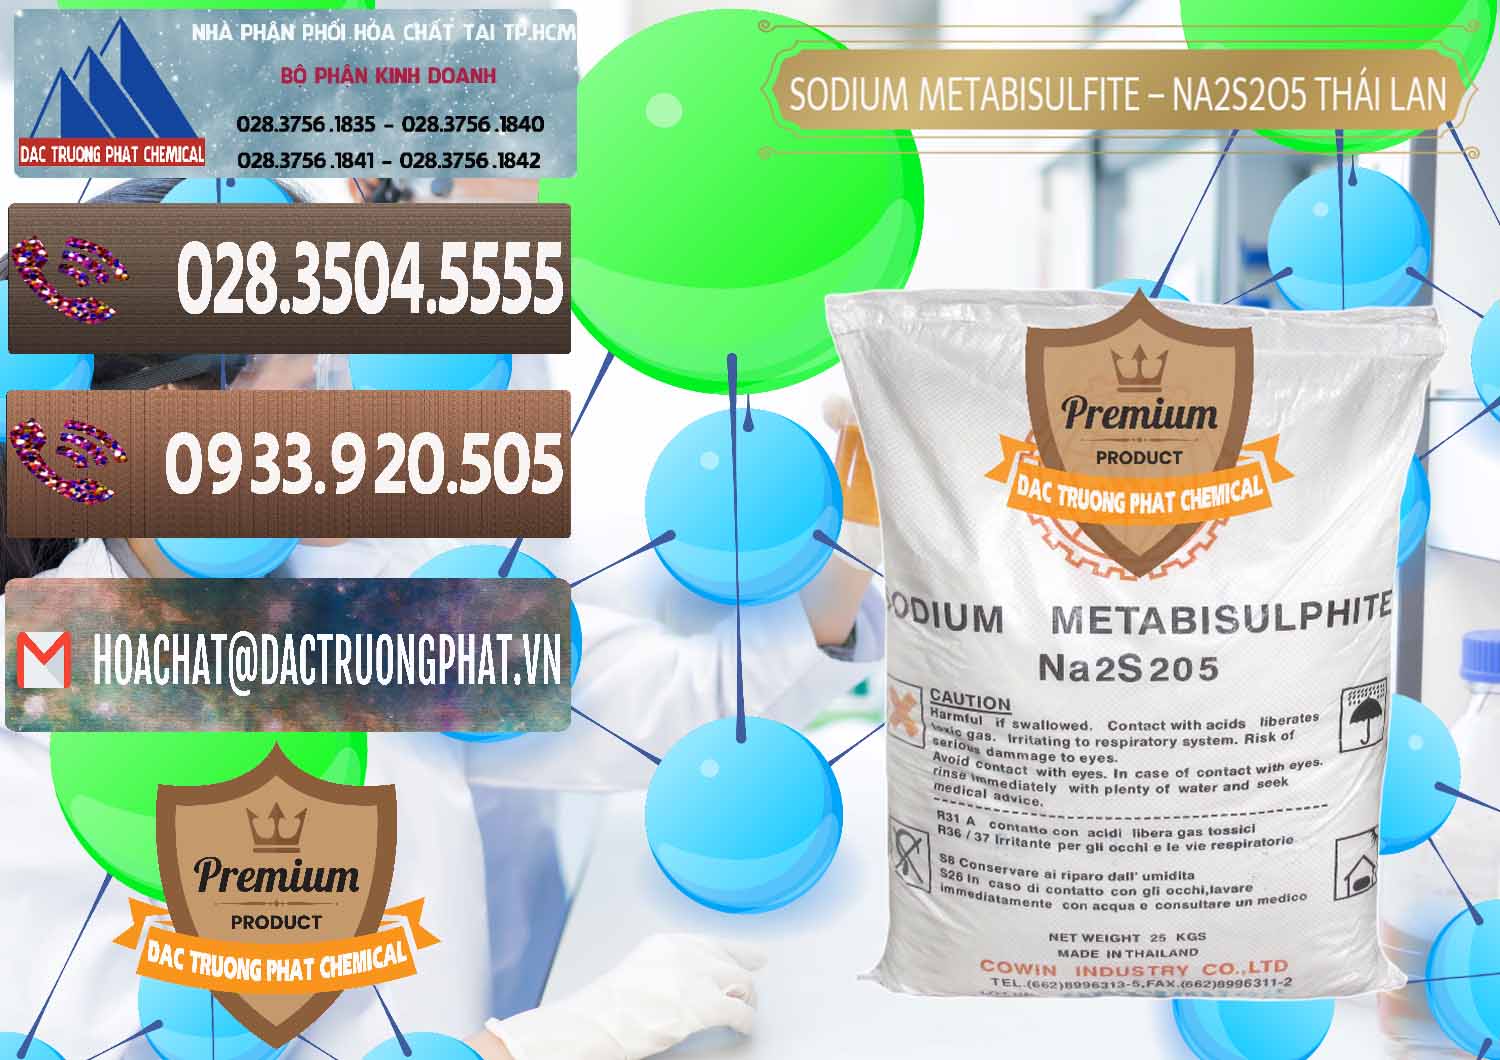 Cty bán ( cung ứng ) Sodium Metabisulfite - NA2S2O5 Thái Lan Cowin - 0145 - Đơn vị chuyên bán ( cung cấp ) hóa chất tại TP.HCM - hoachatviet.net